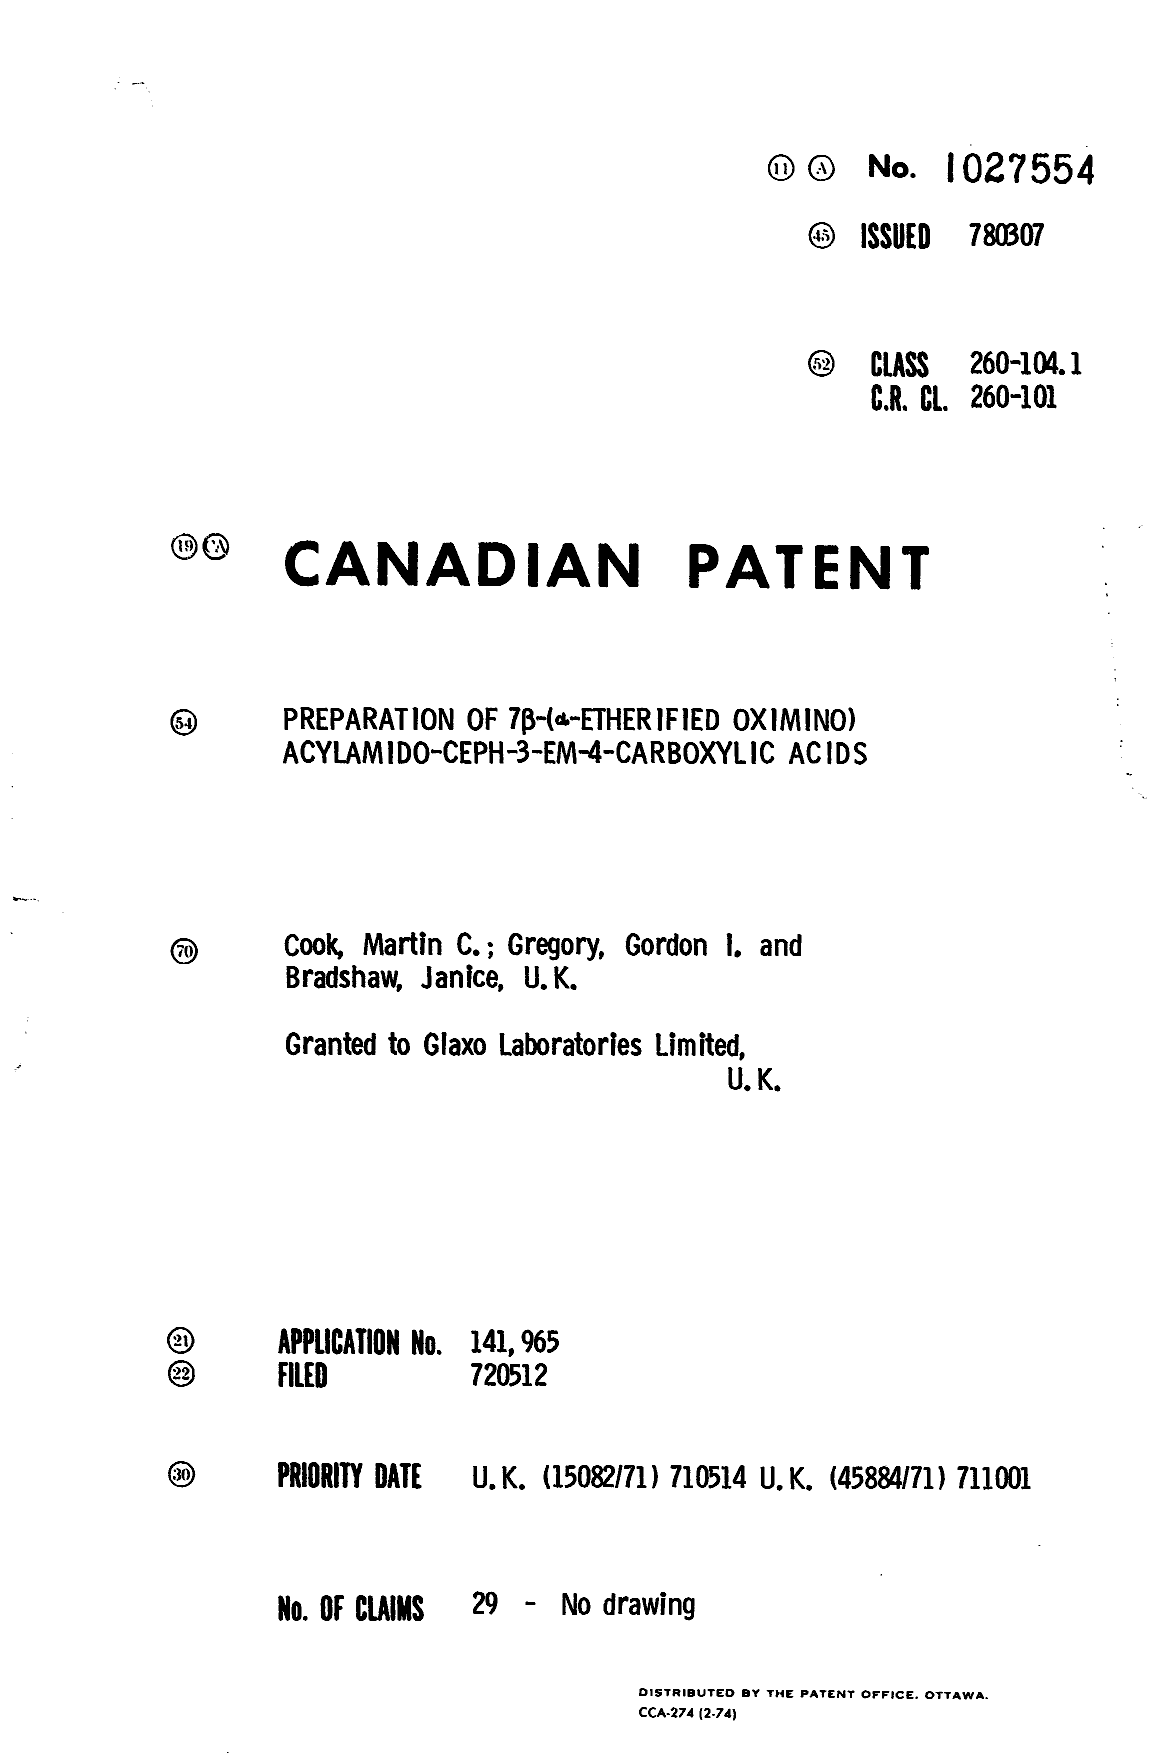 Document de brevet canadien 1027554. Page couverture 19940509. Image 1 de 1